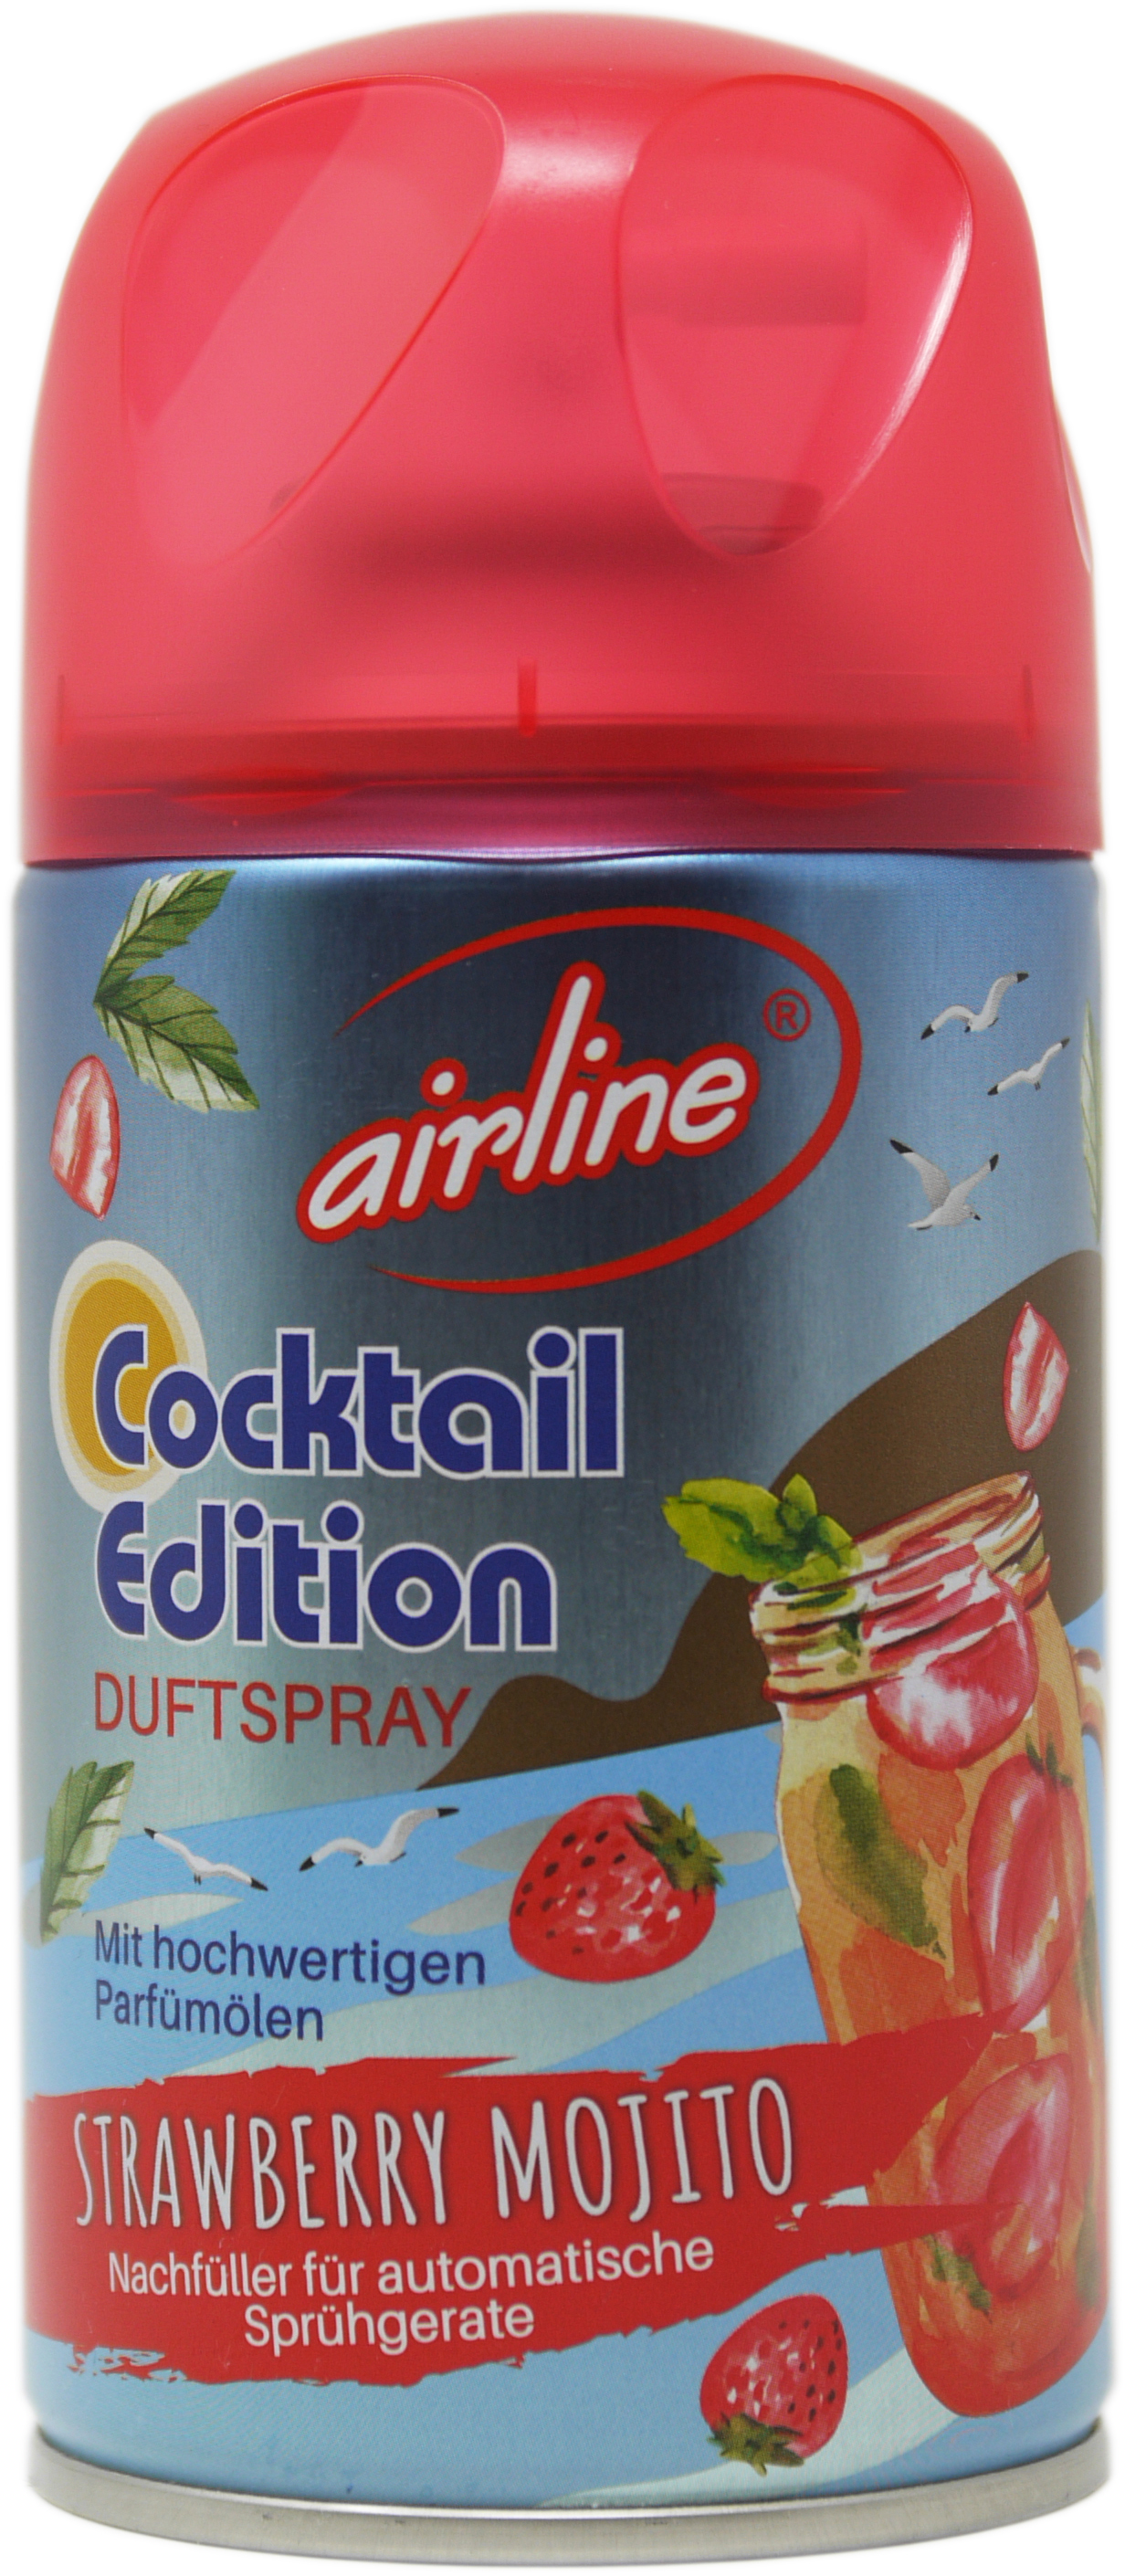 00560 - airline Cocktail Edition Strawberry Mojito Nachfüllkartuschen 250 ml